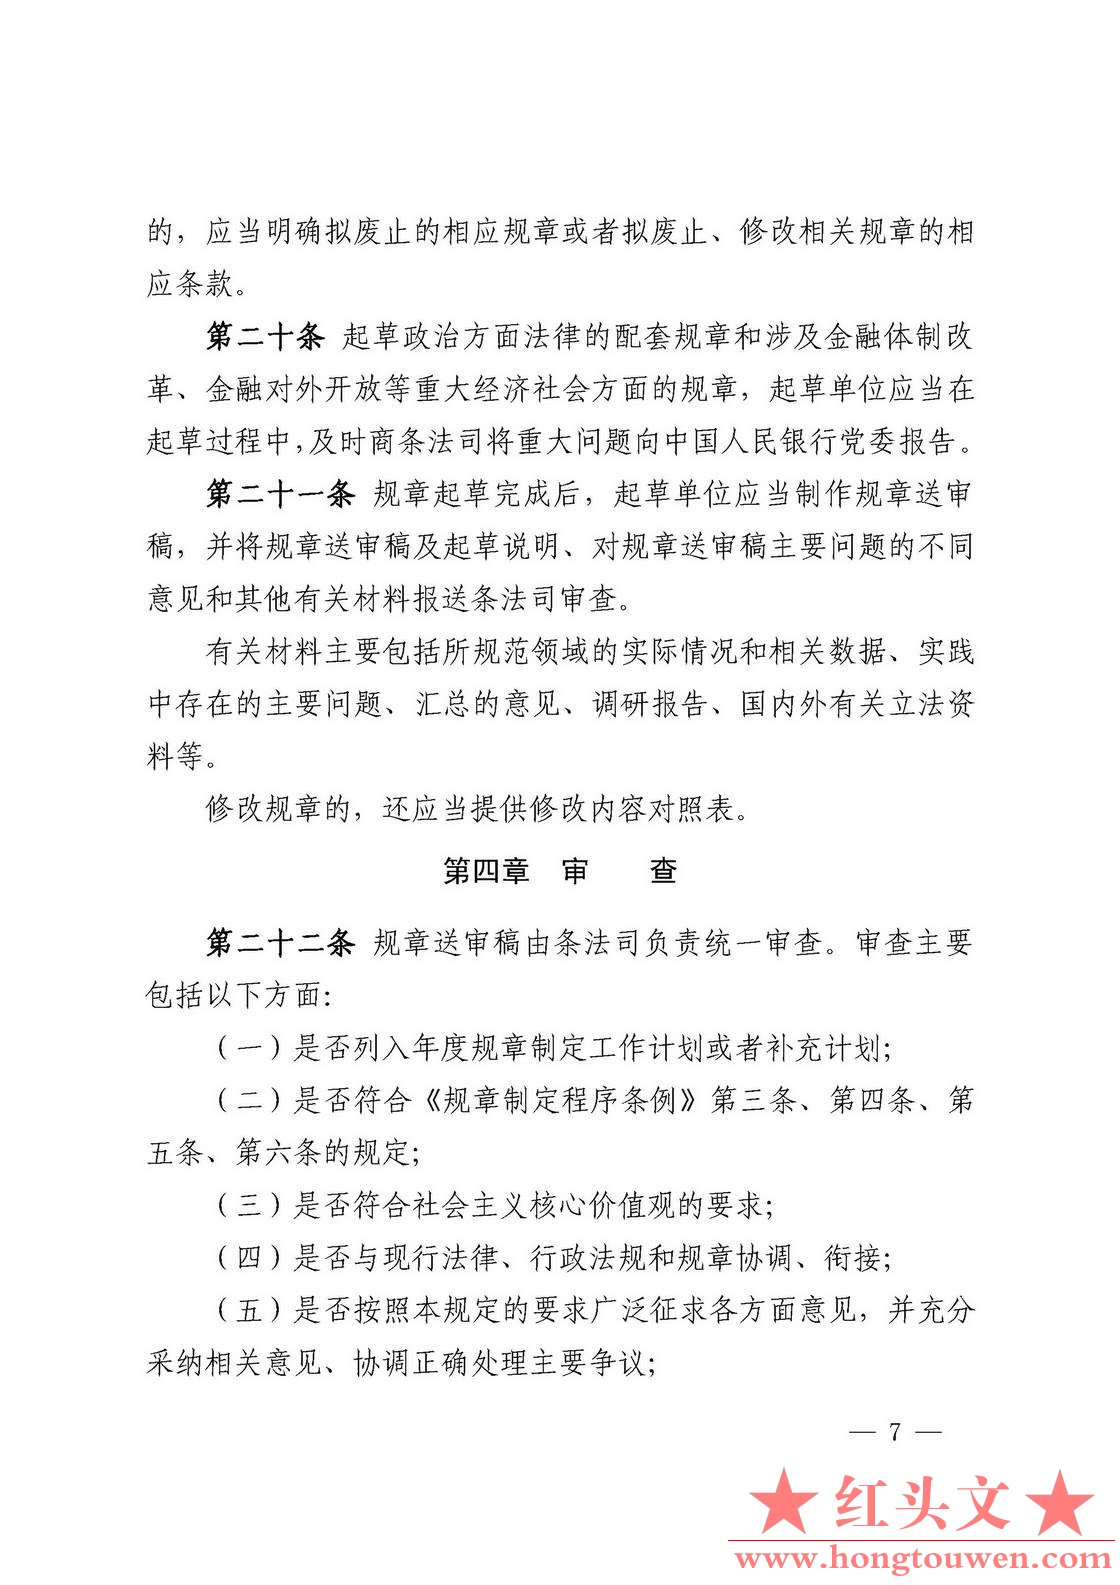 中国人民银行令[2018]3号-中国人民银行规章制定程序与管理规定_页面_07.jpg.jpg